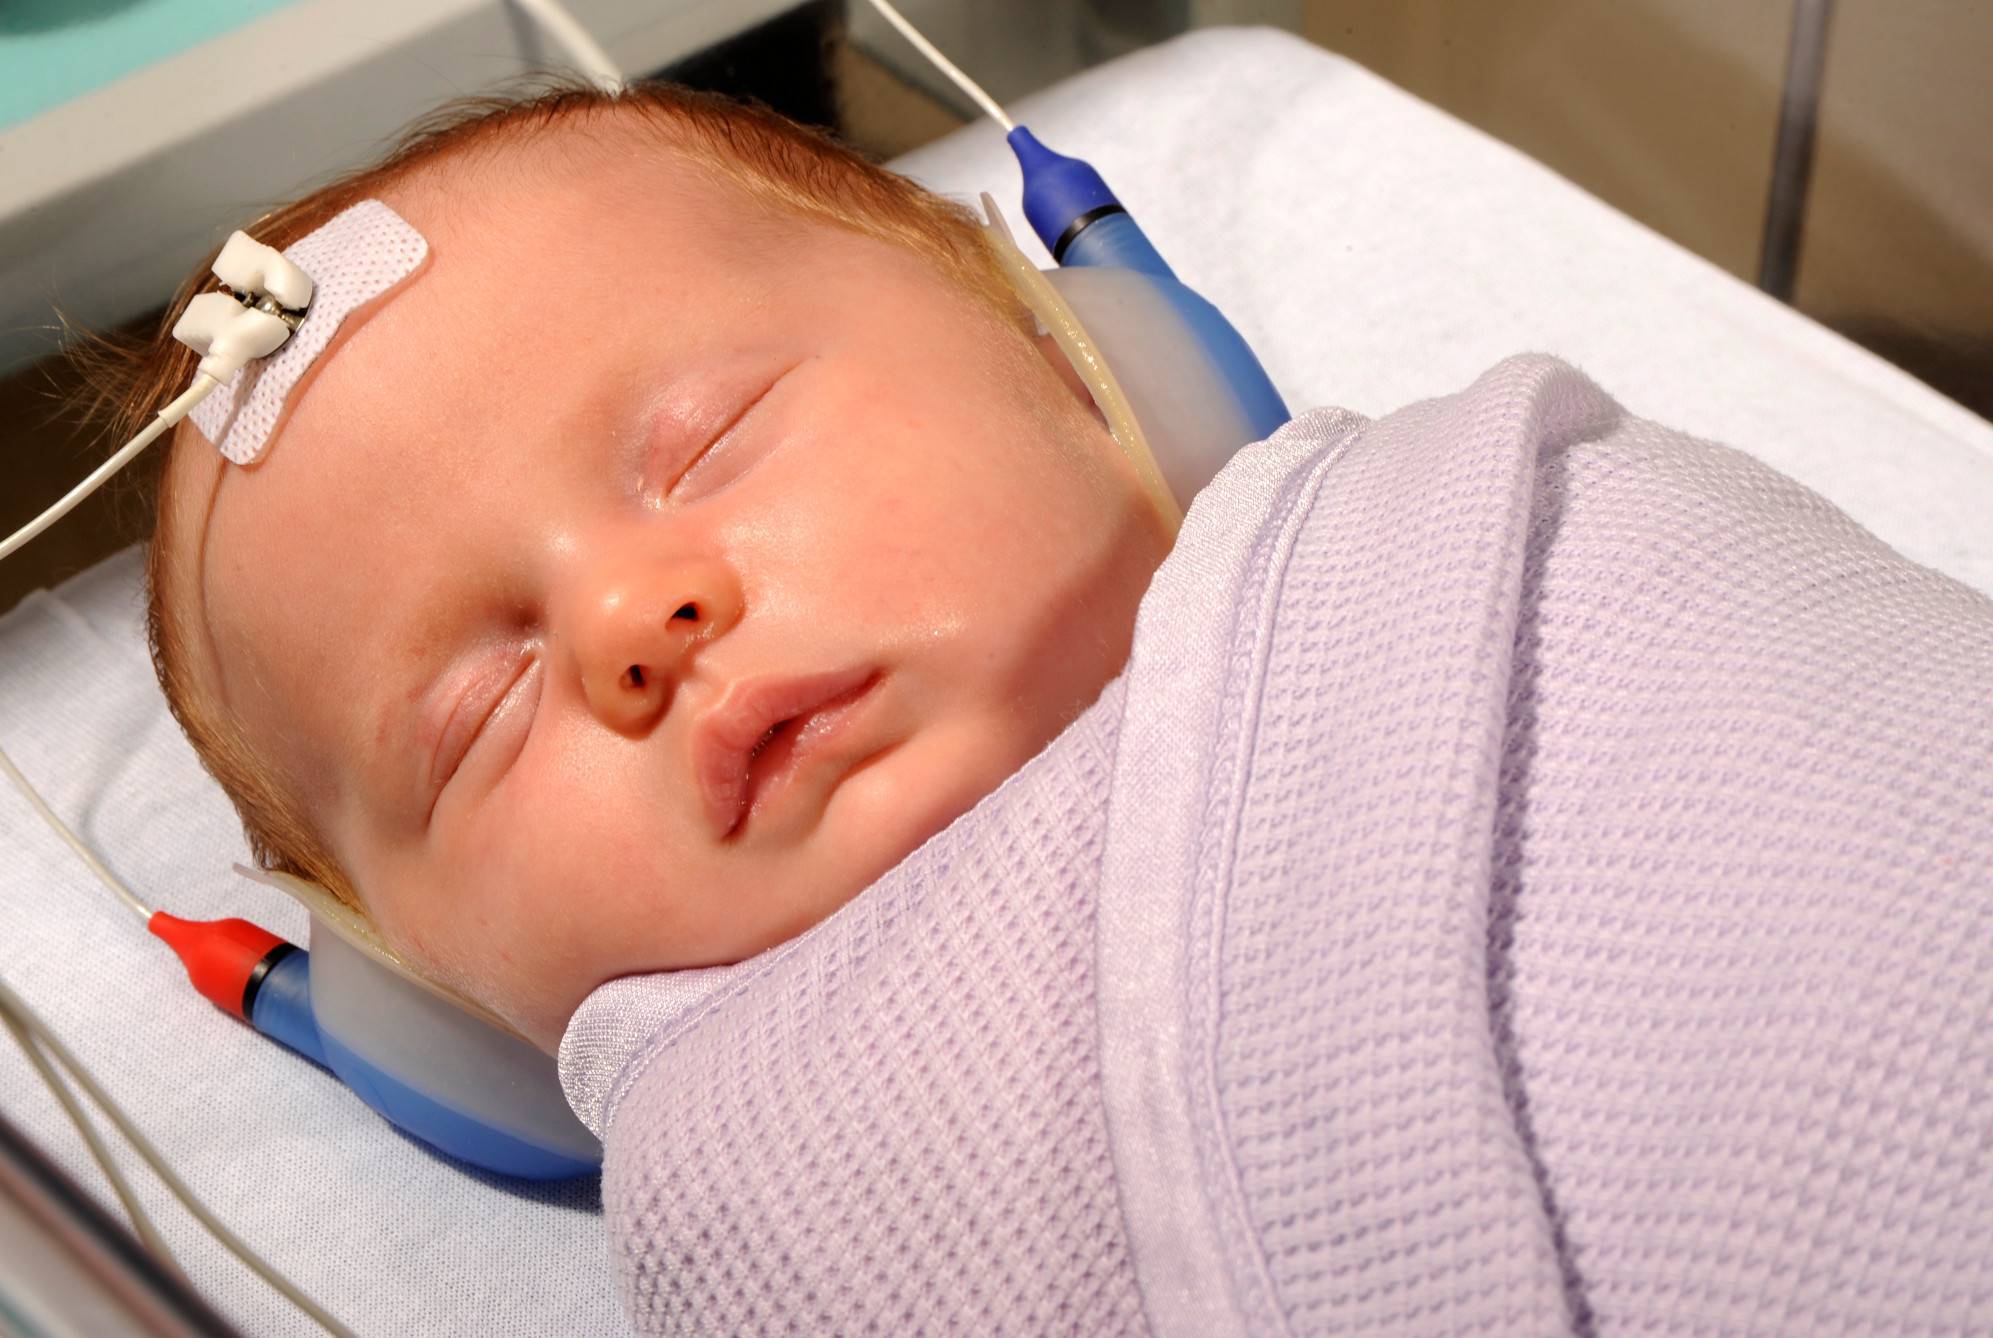 Скрининг новорожденных – цены на аудиологический скрининг новорожденных, как проводится и результаты